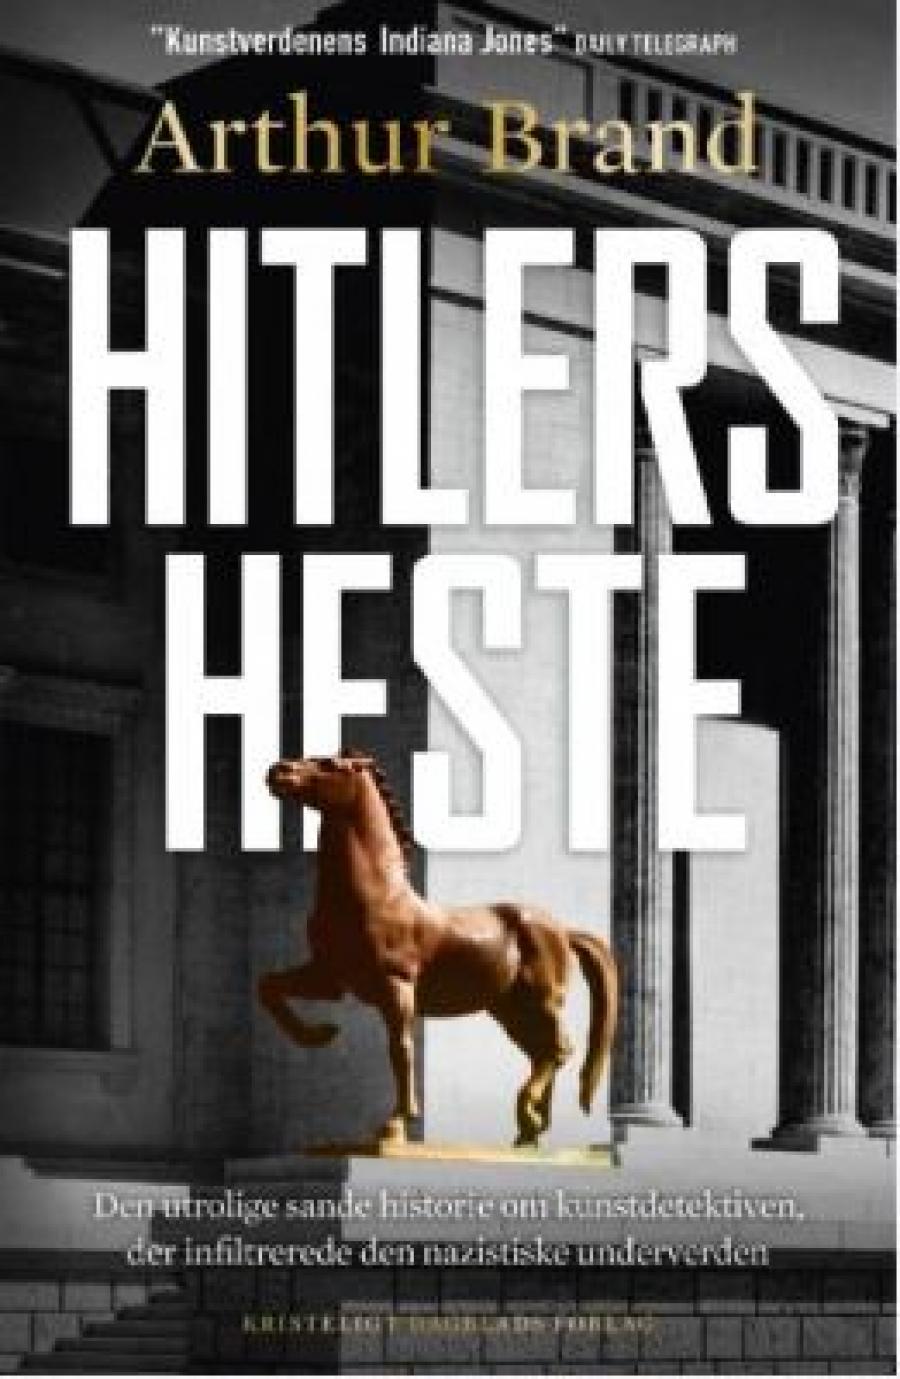 Arthur Brand, "Hitlers heste"